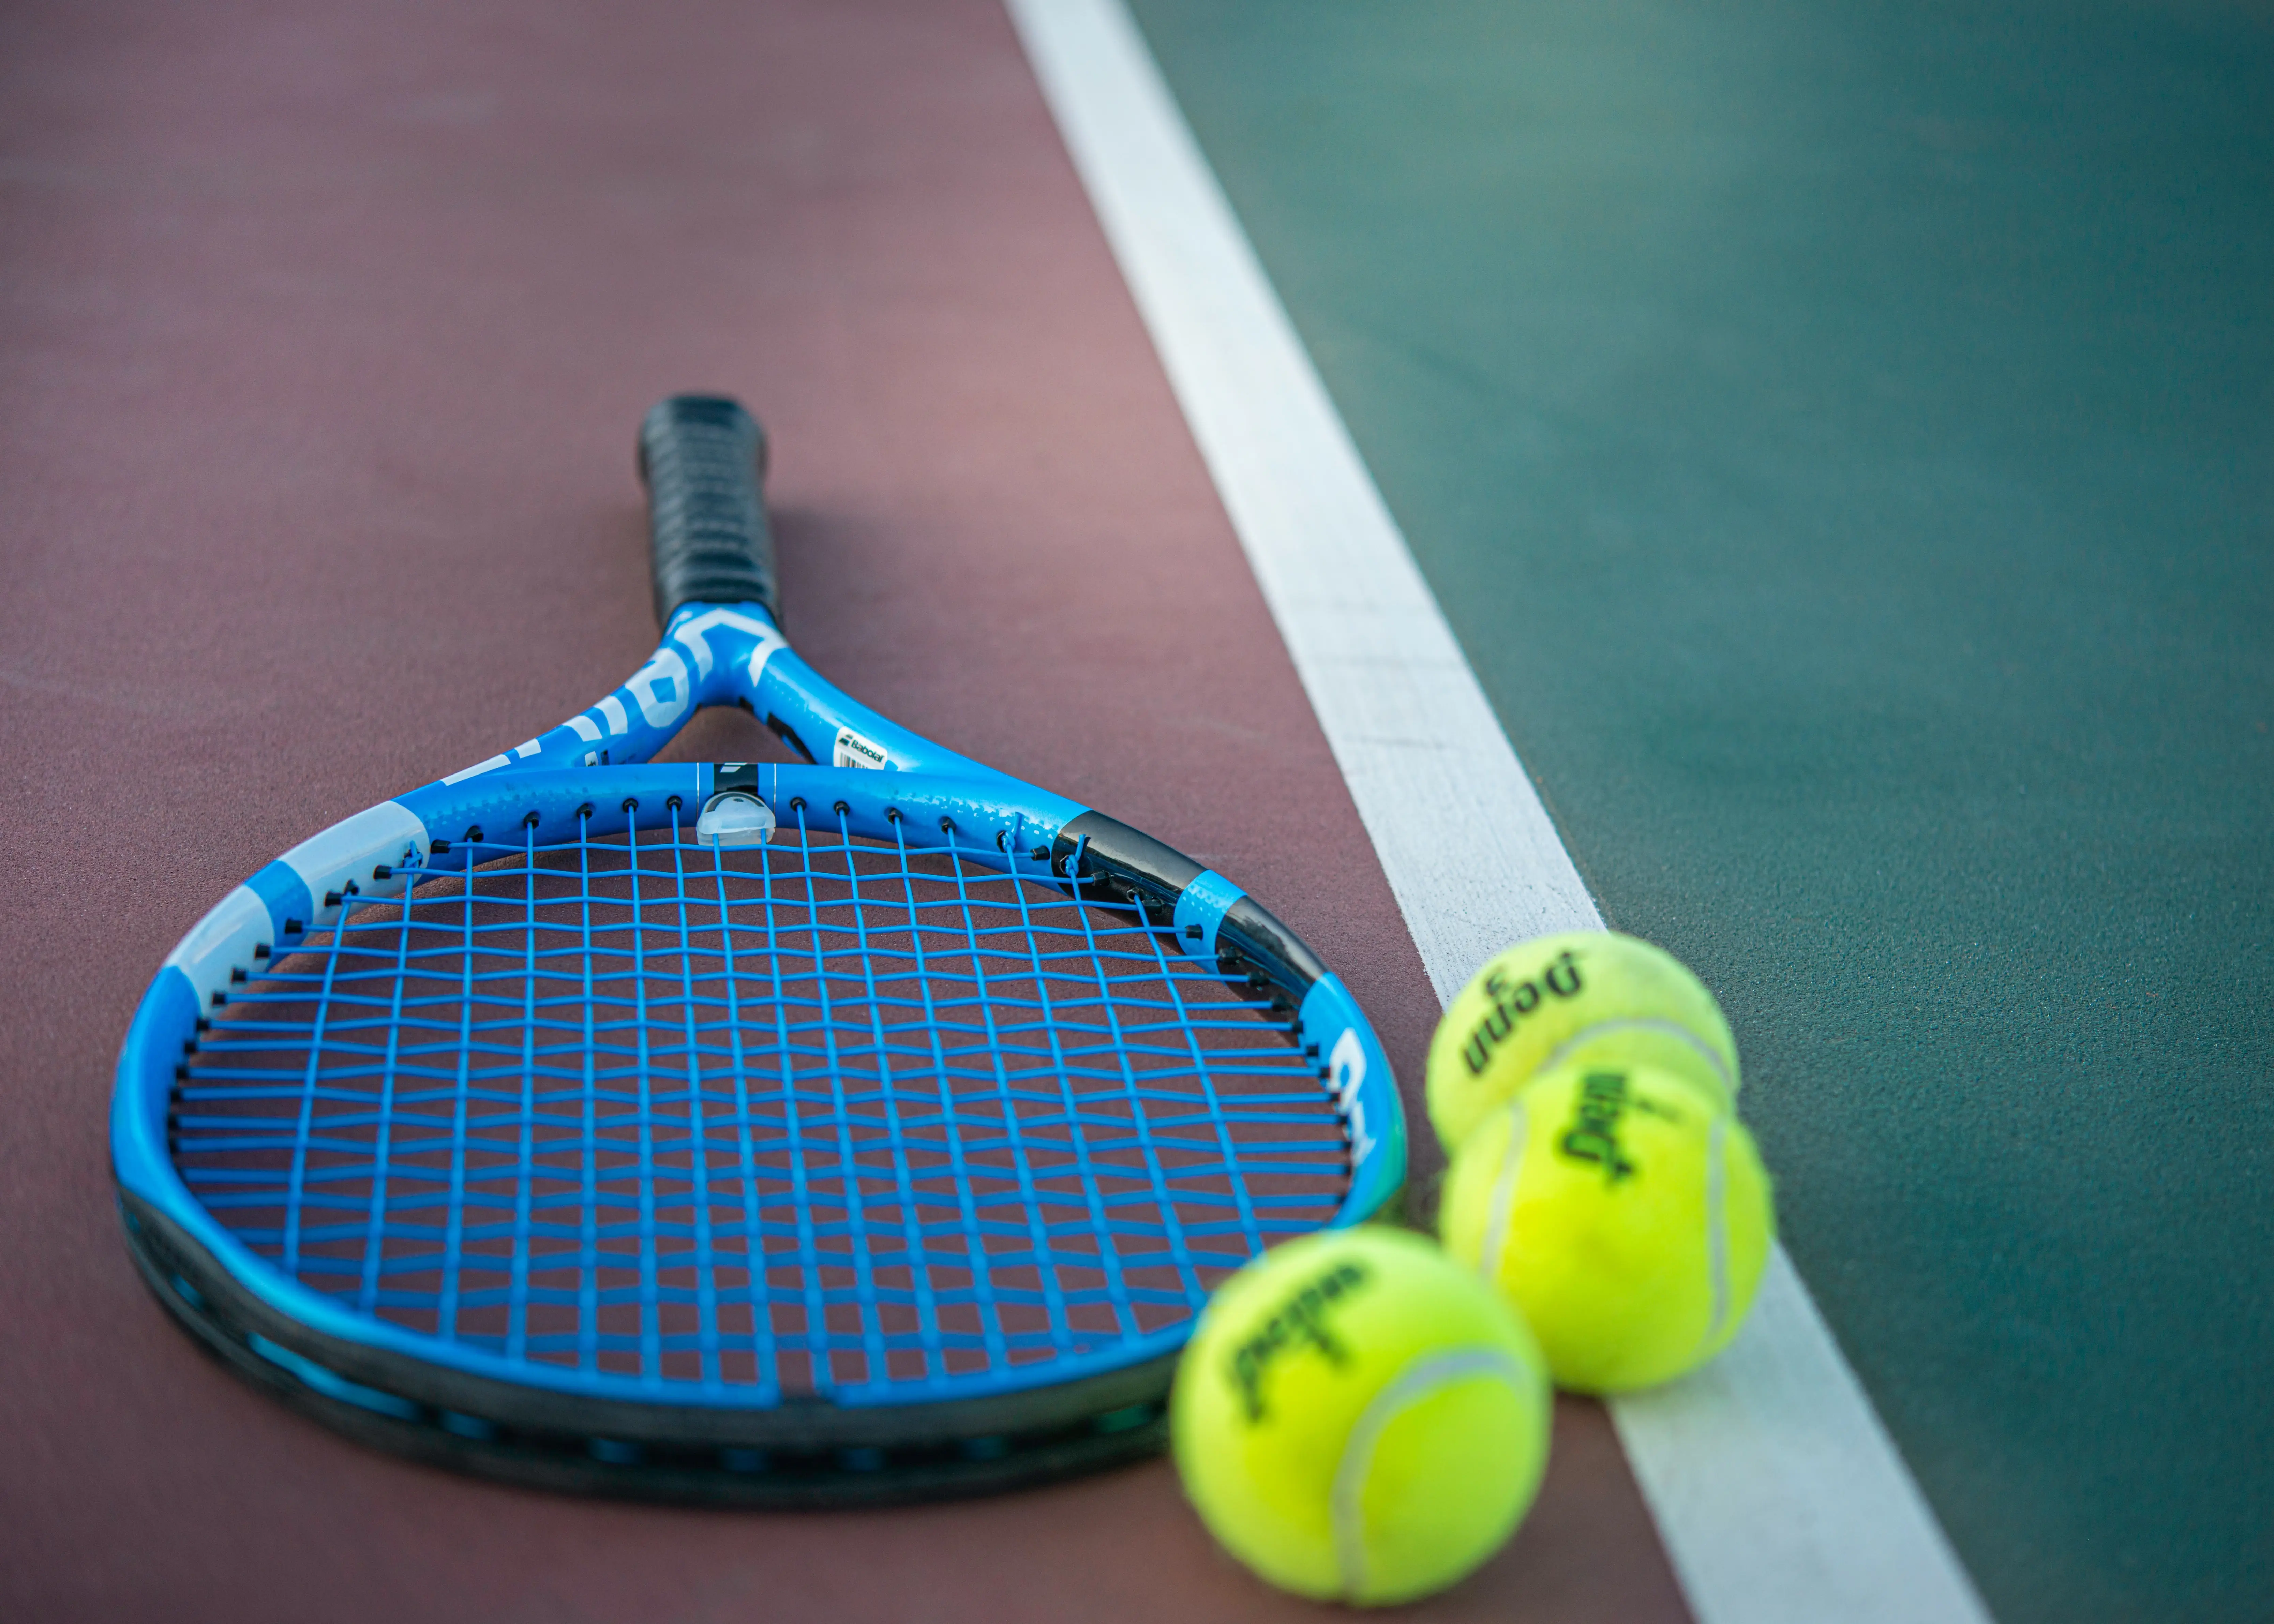 Tahiti Vervormen Opsplitsen Welk tennisracket past bij mij? | Herqua Sports